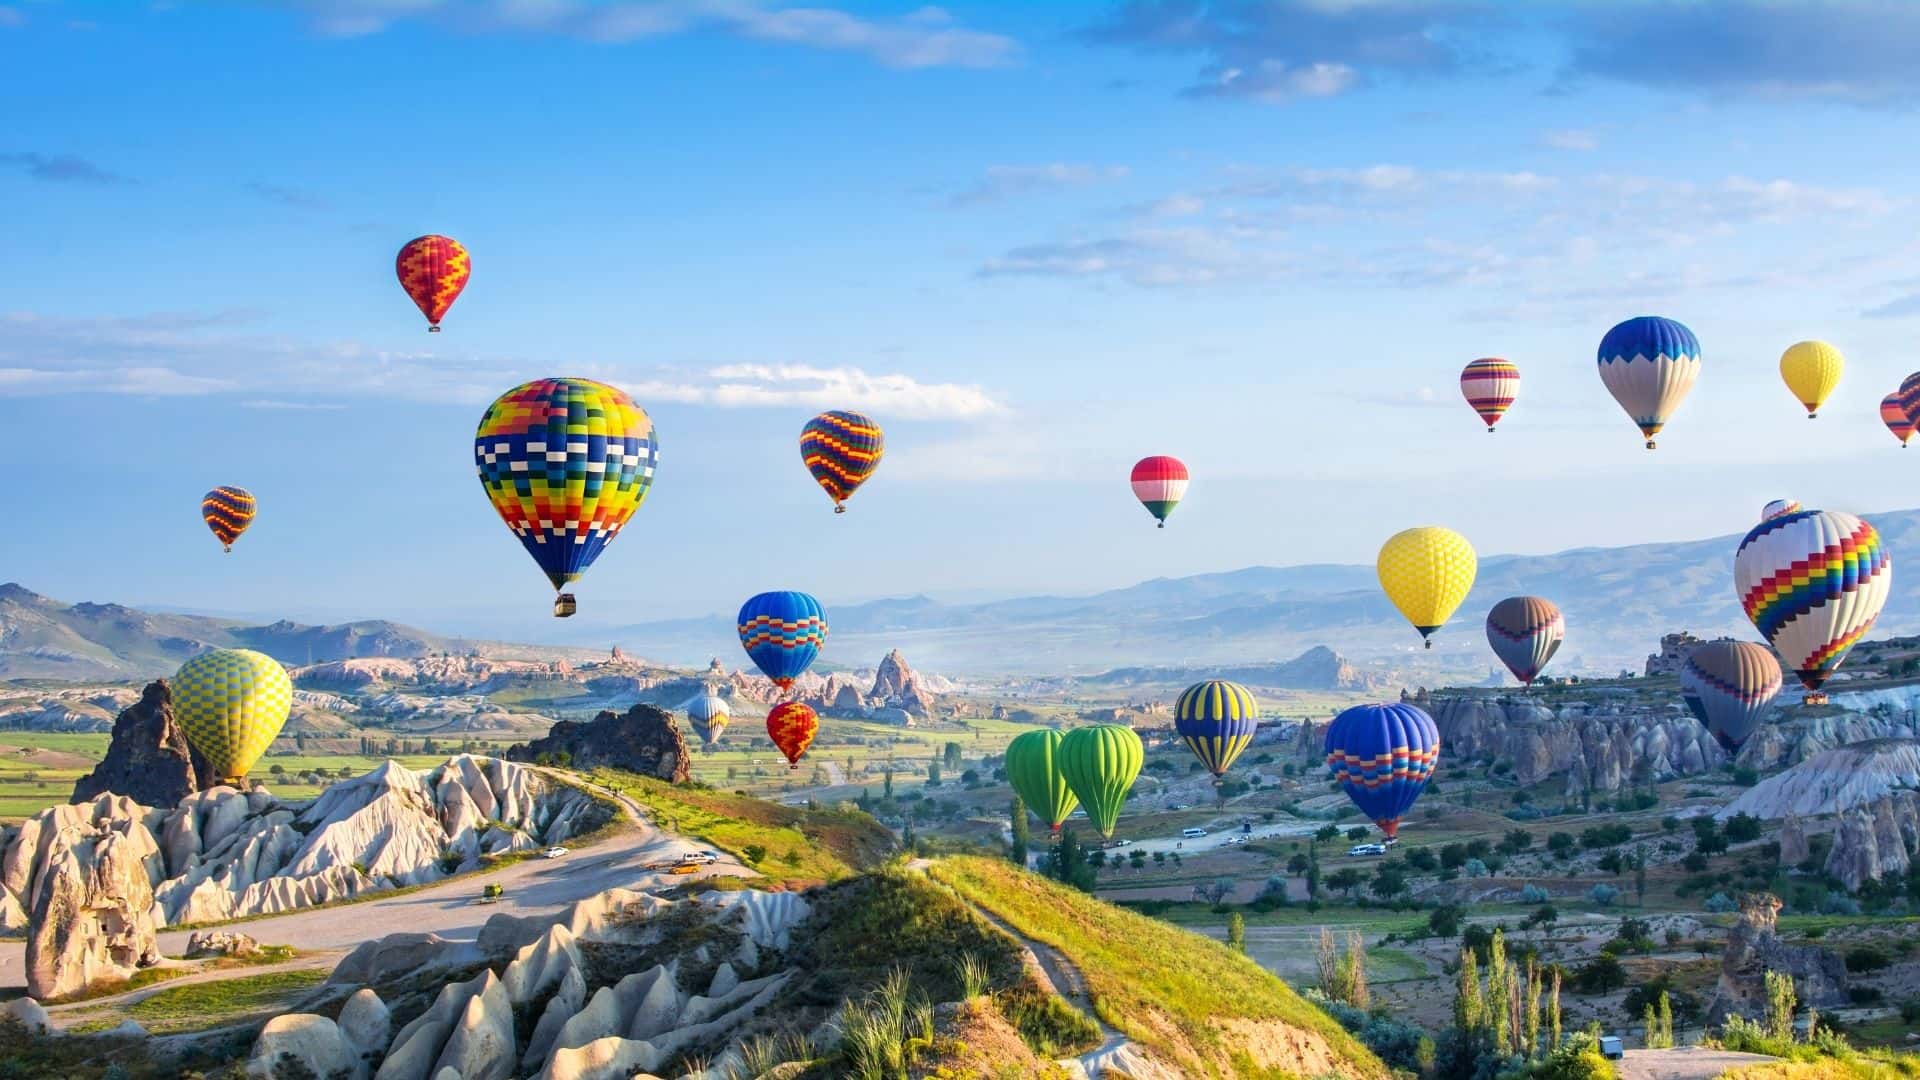 Du khách đến Thổ Nhĩ Kỳ tăng cao trong 8 tháng đầu năm 2022, cho thấy sự phục hồi du lịch đáng kinh ngạc